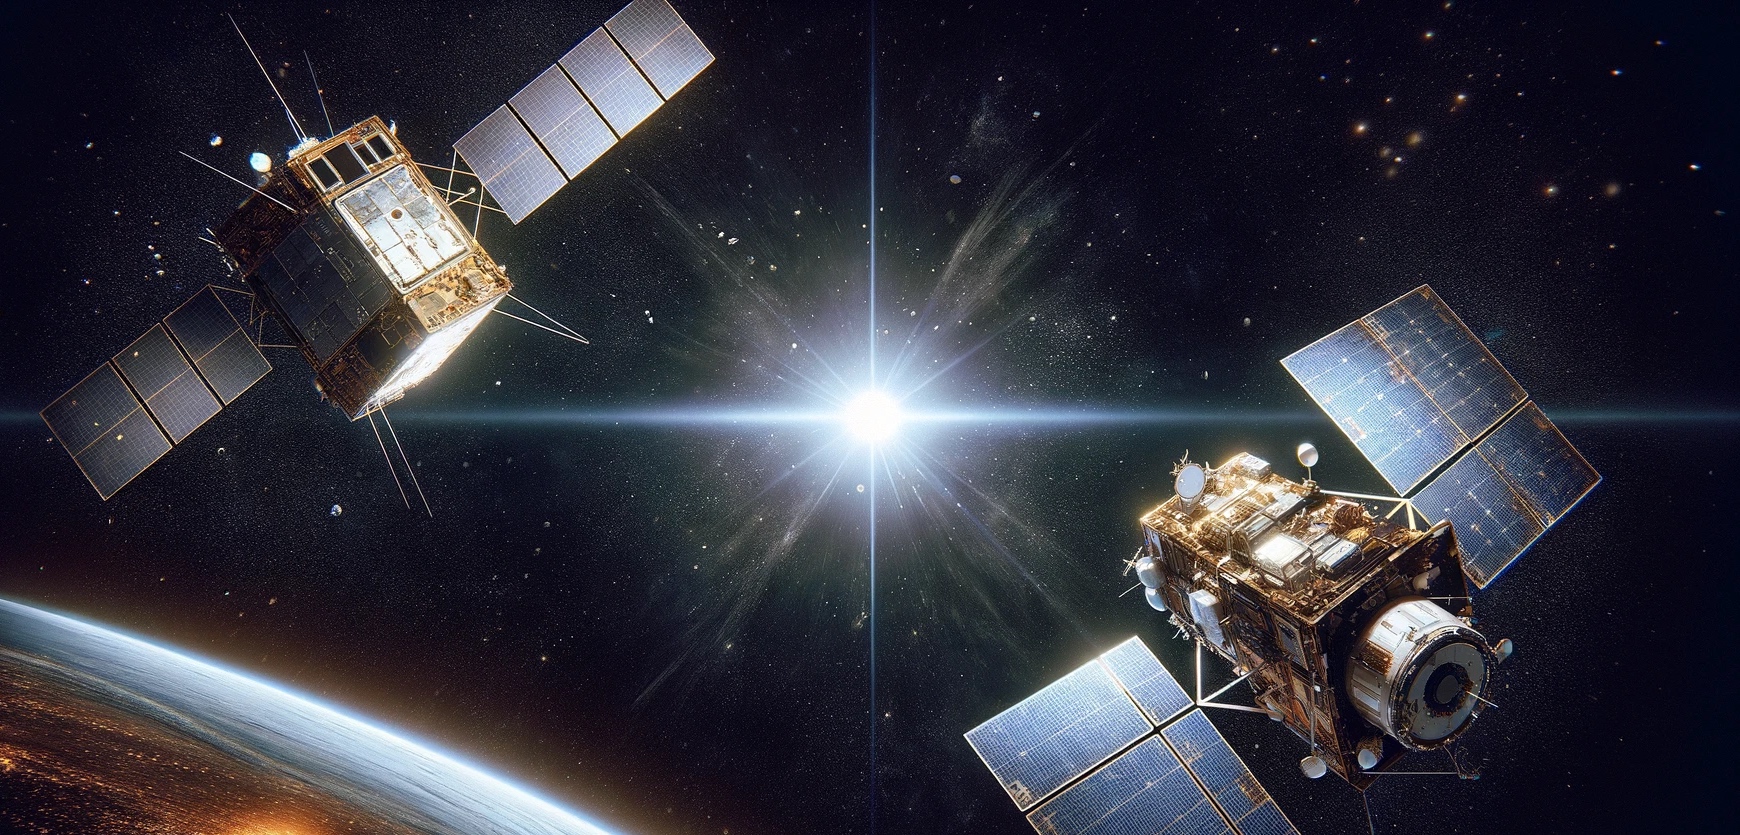 Deux satellites sont passés à 17 mètres l'un de l'autre. La collision entre eux aurait généré des milliers de débris. © XD, Futura avec Adobe Stock